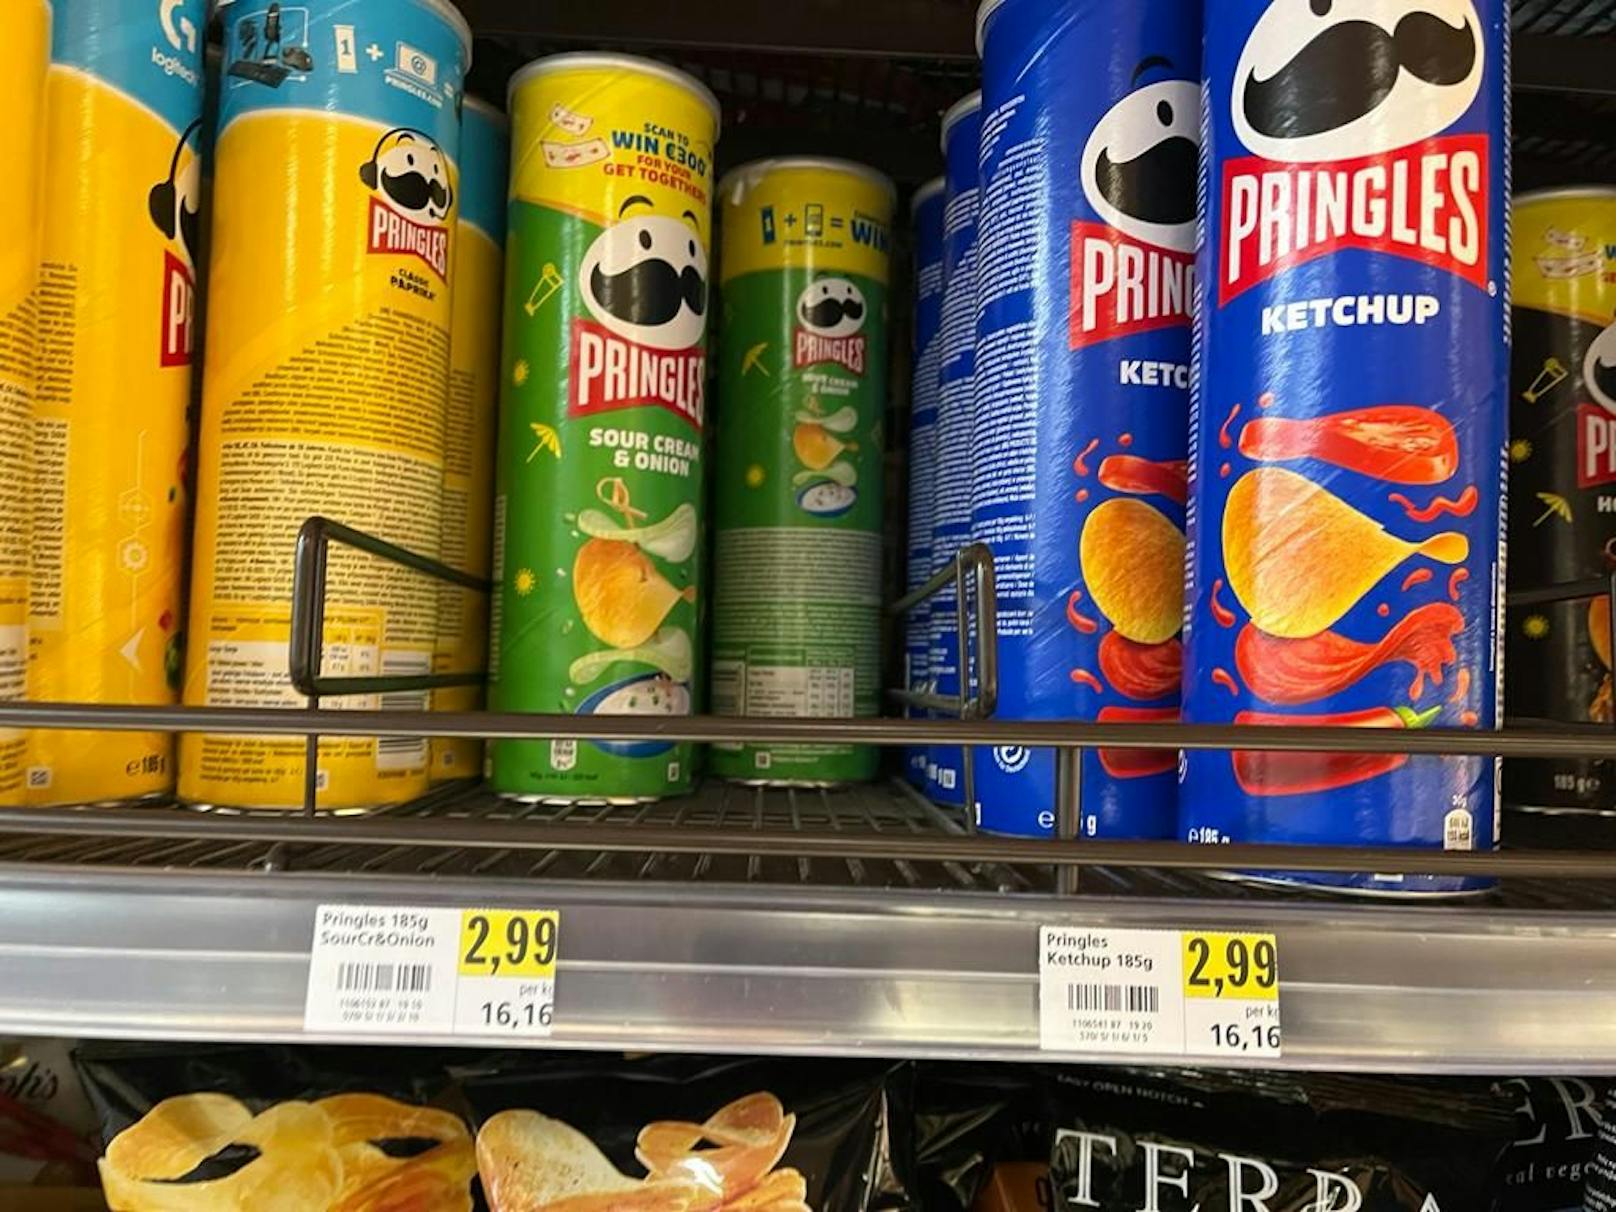 Pringles kosten das Doppelte mit weniger Inhalt.&nbsp;